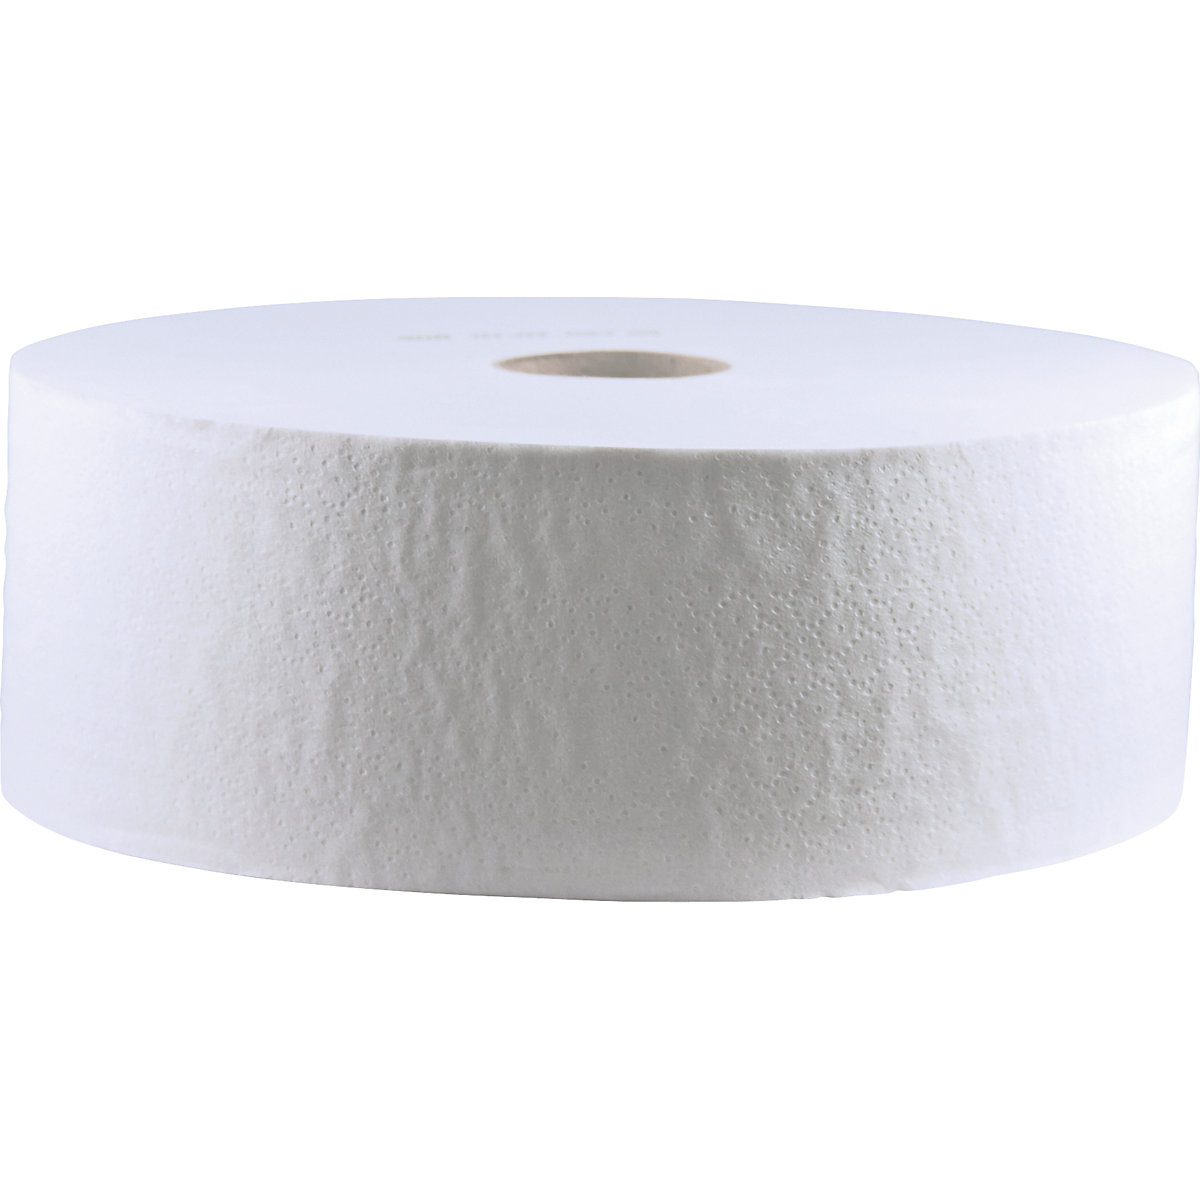 Toaletní papír ve velkých rolích – CWS